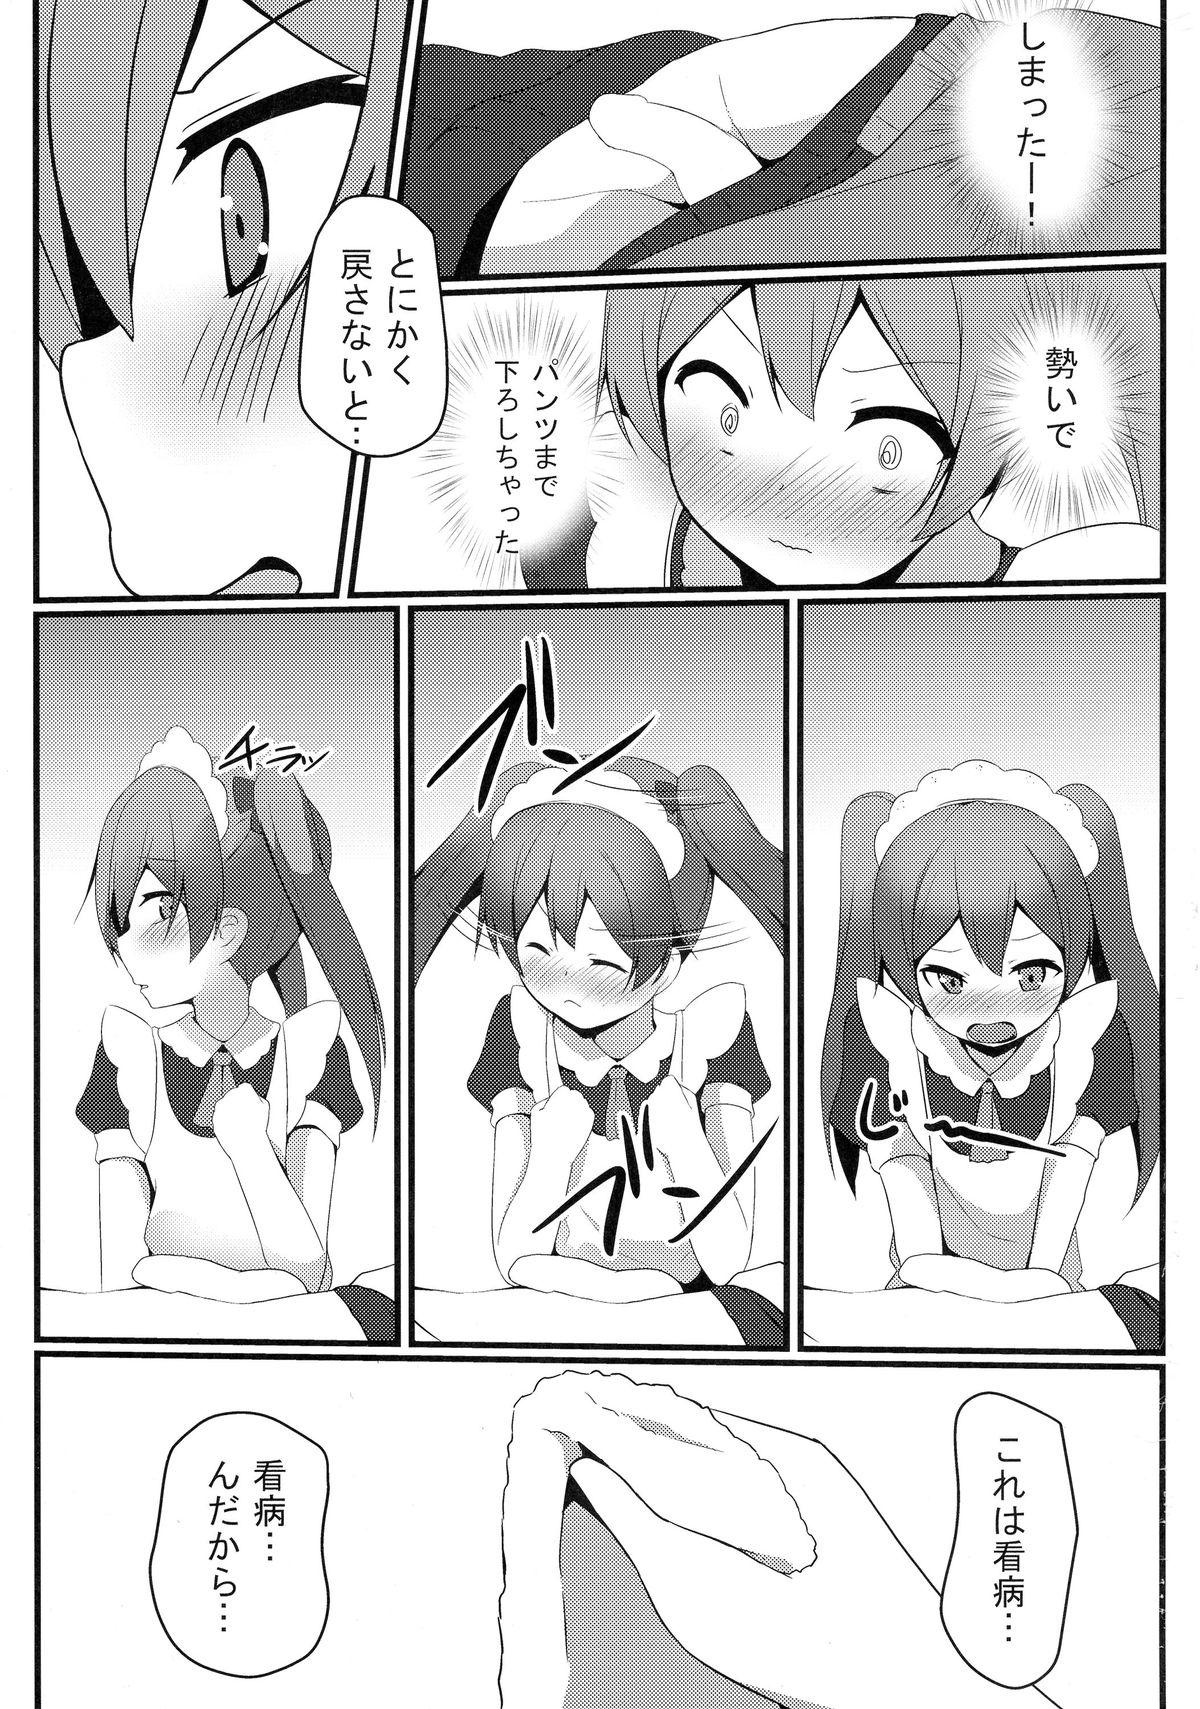 Petite Porn Hentai to! 4 - Hentai ouji to warawanai neko Step - Page 8